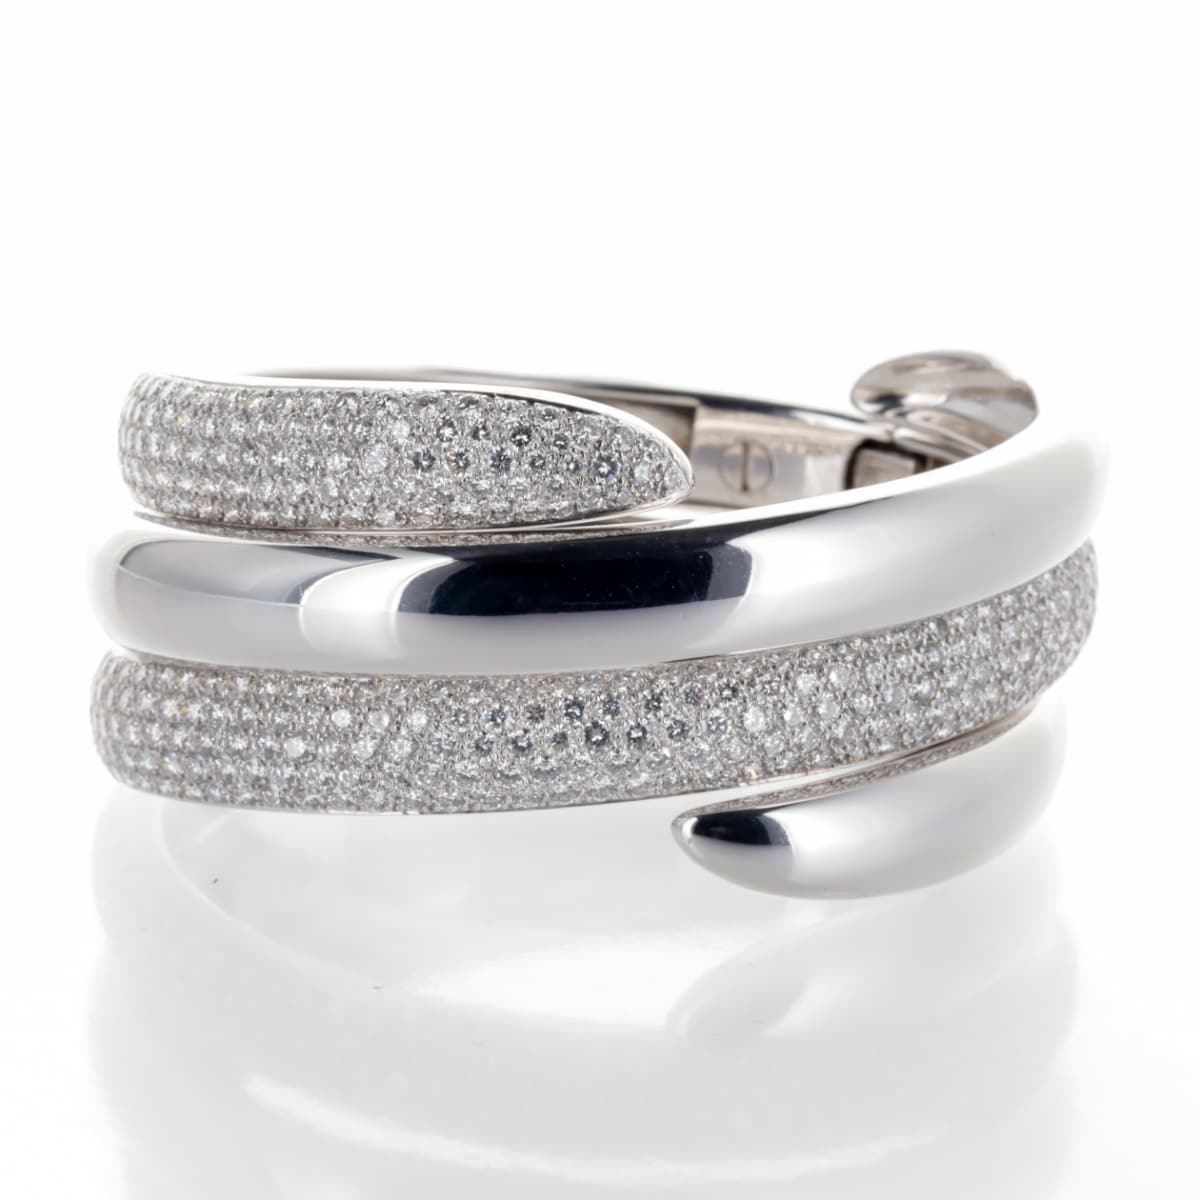 Double Bracelet Chaumet Or blanc et Diamants